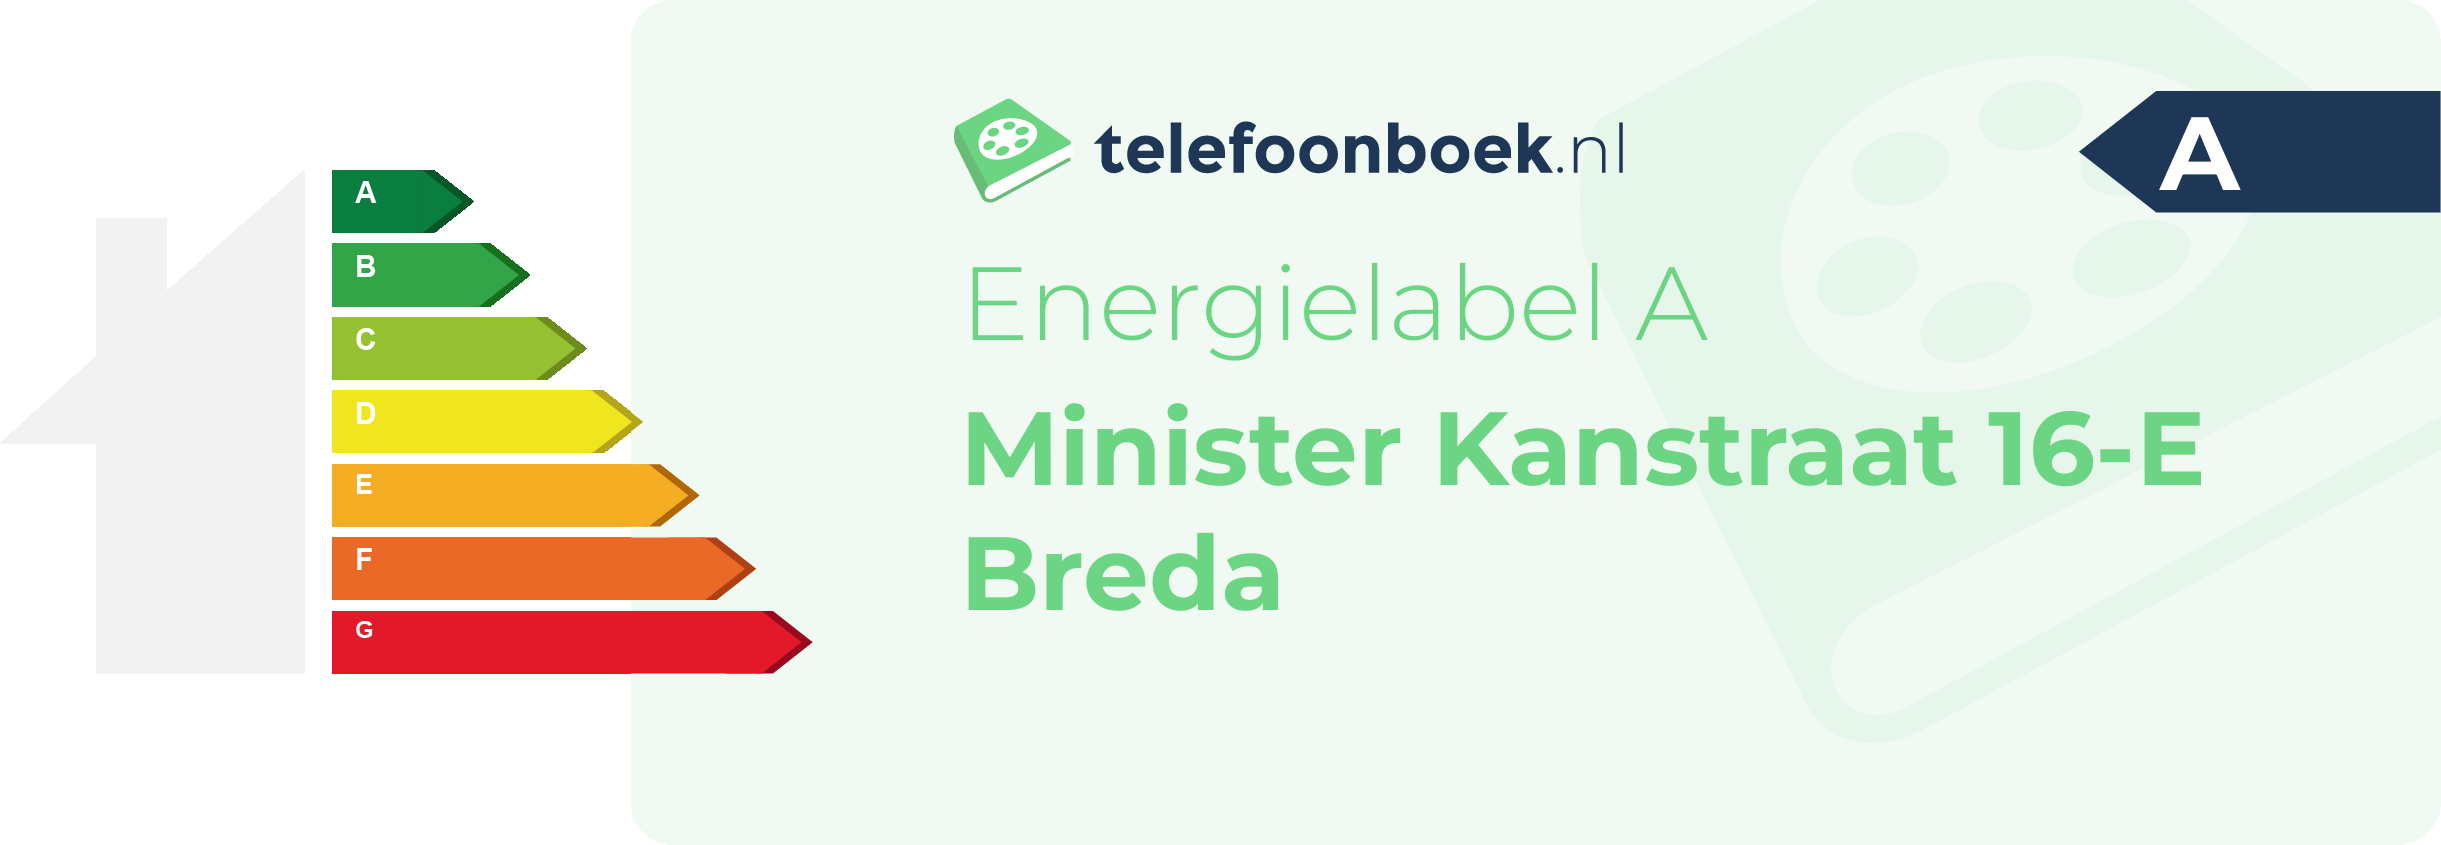 Energielabel Minister Kanstraat 16-E Breda